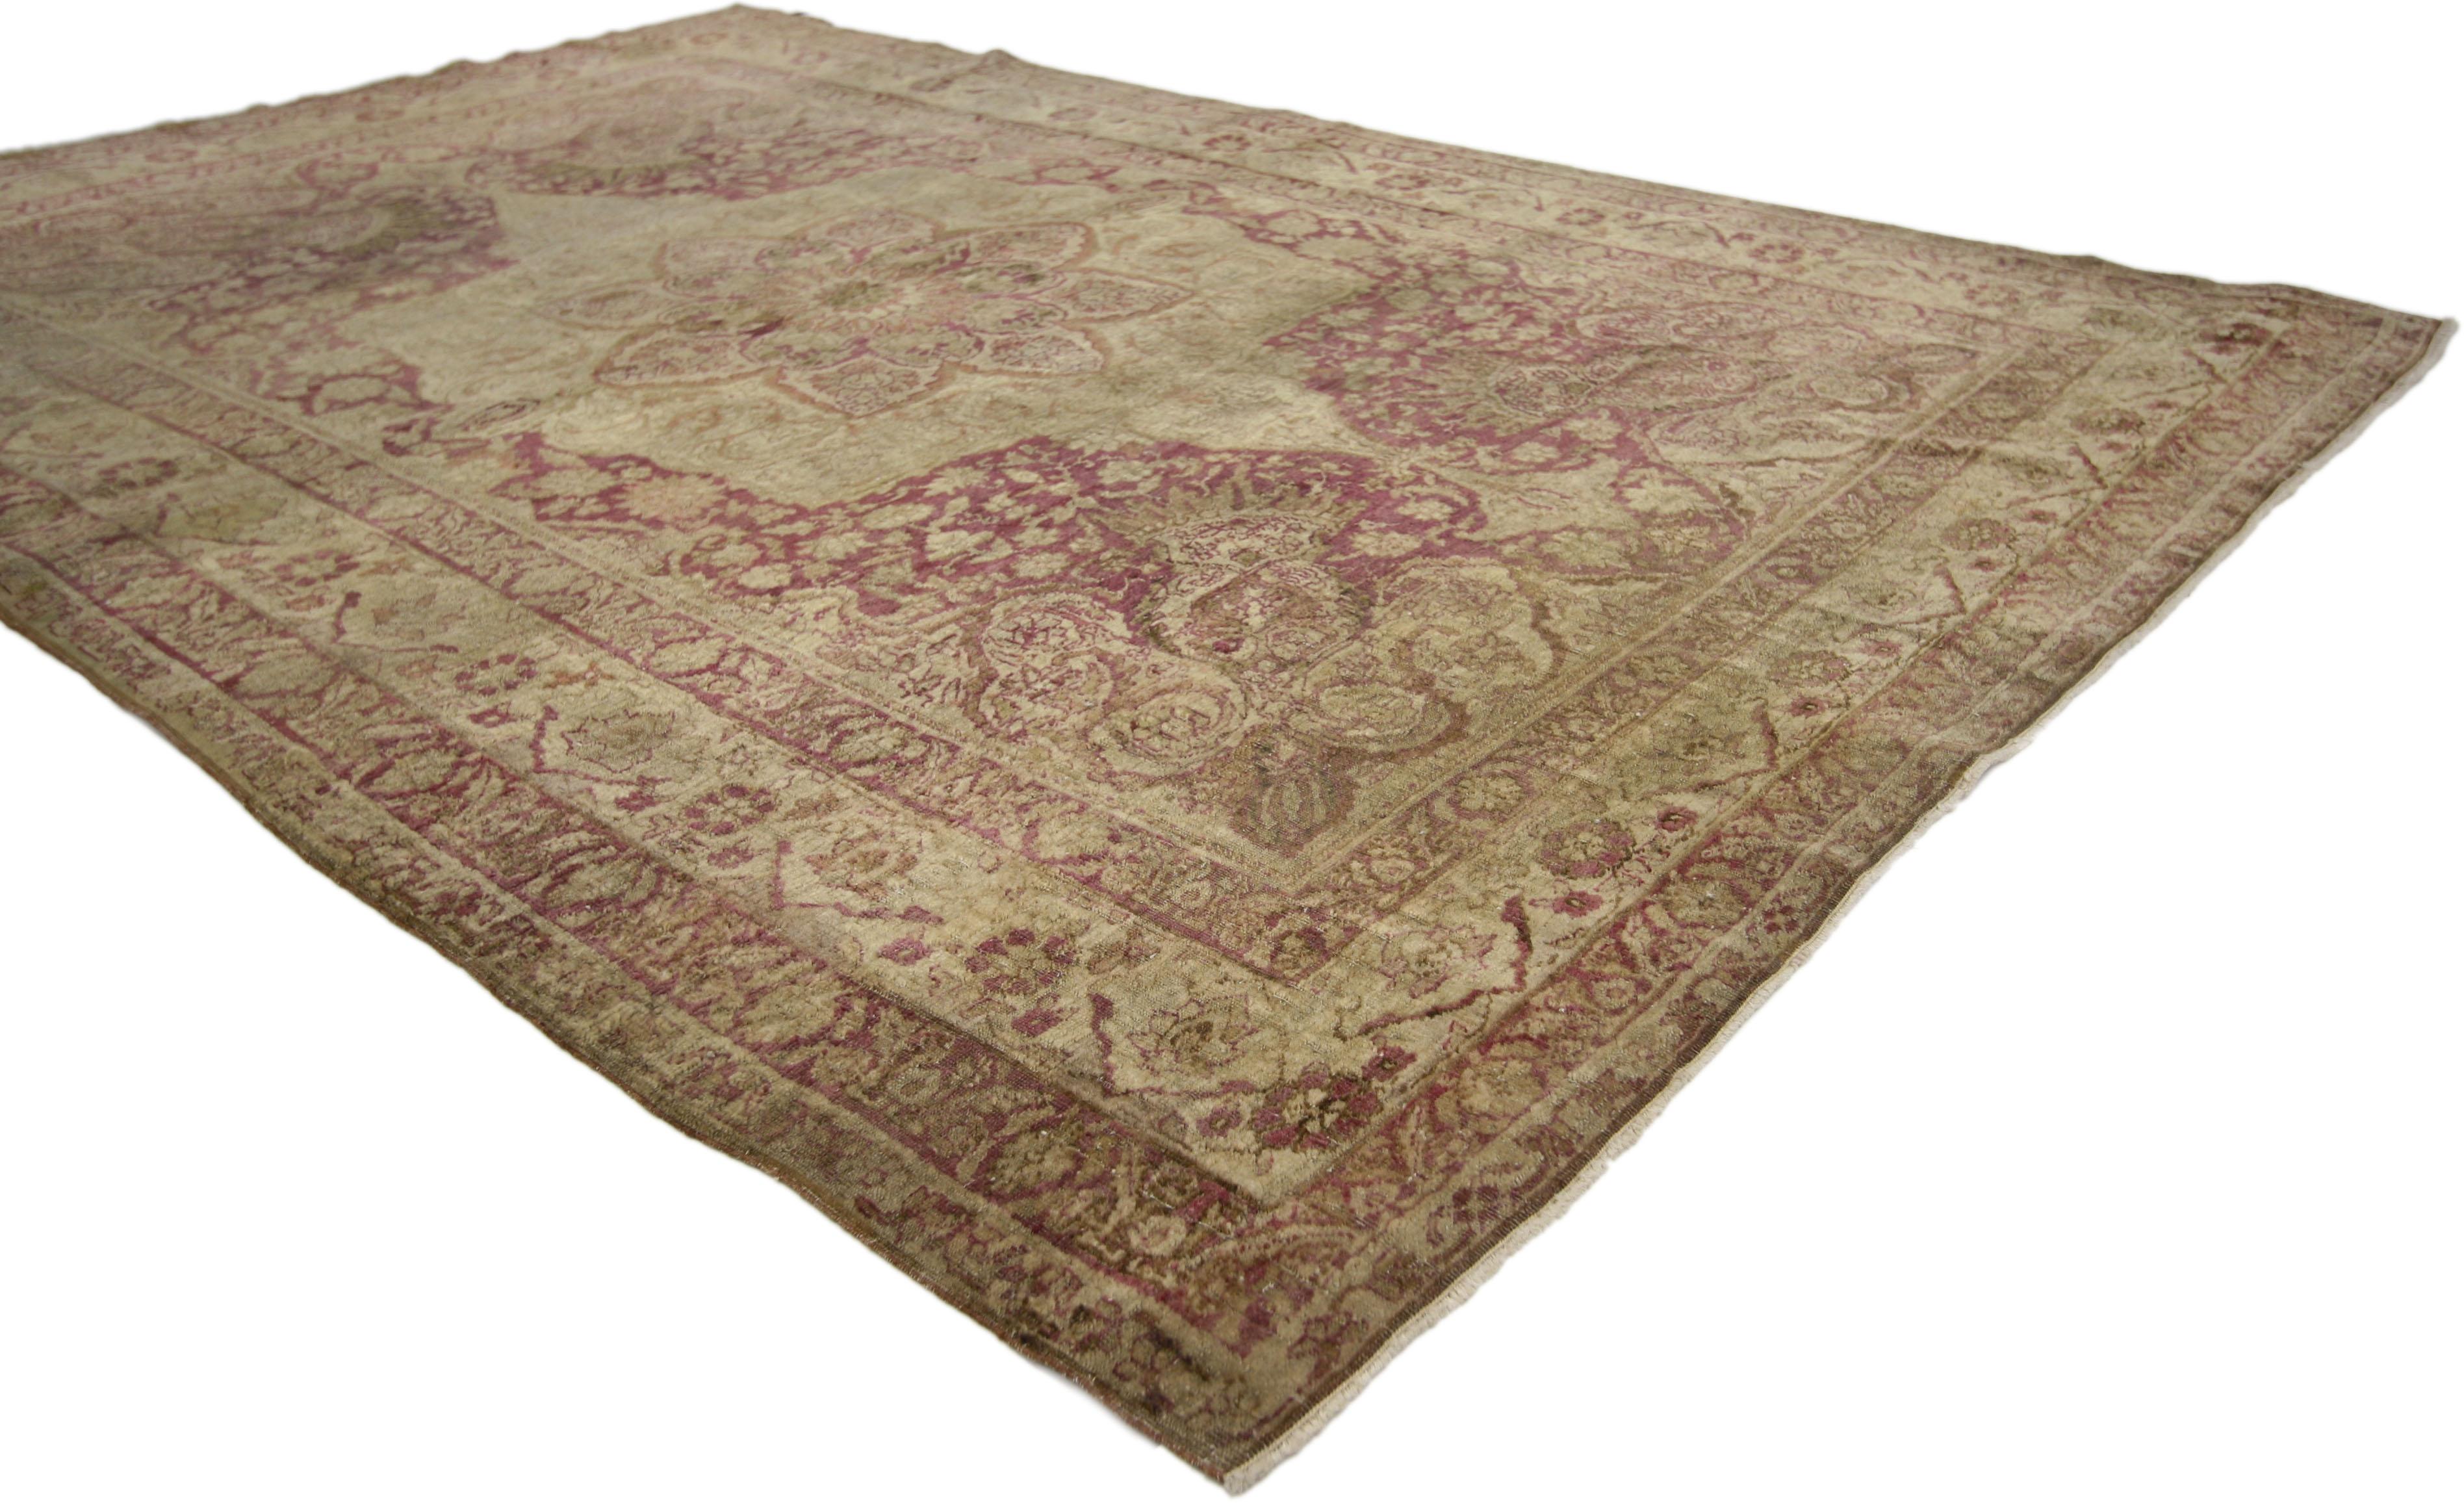 73148 Antiker türkischer Hereke-Teppich mit Jugendstil in gedeckten Farben. Dieses sehr begehrte türkische Hereke aus dem 19. Jahrhundert zeichnet sich durch ein kompliziertes Medaillon in der Mitte aus, das in einer idyllischen Farbpalette seine